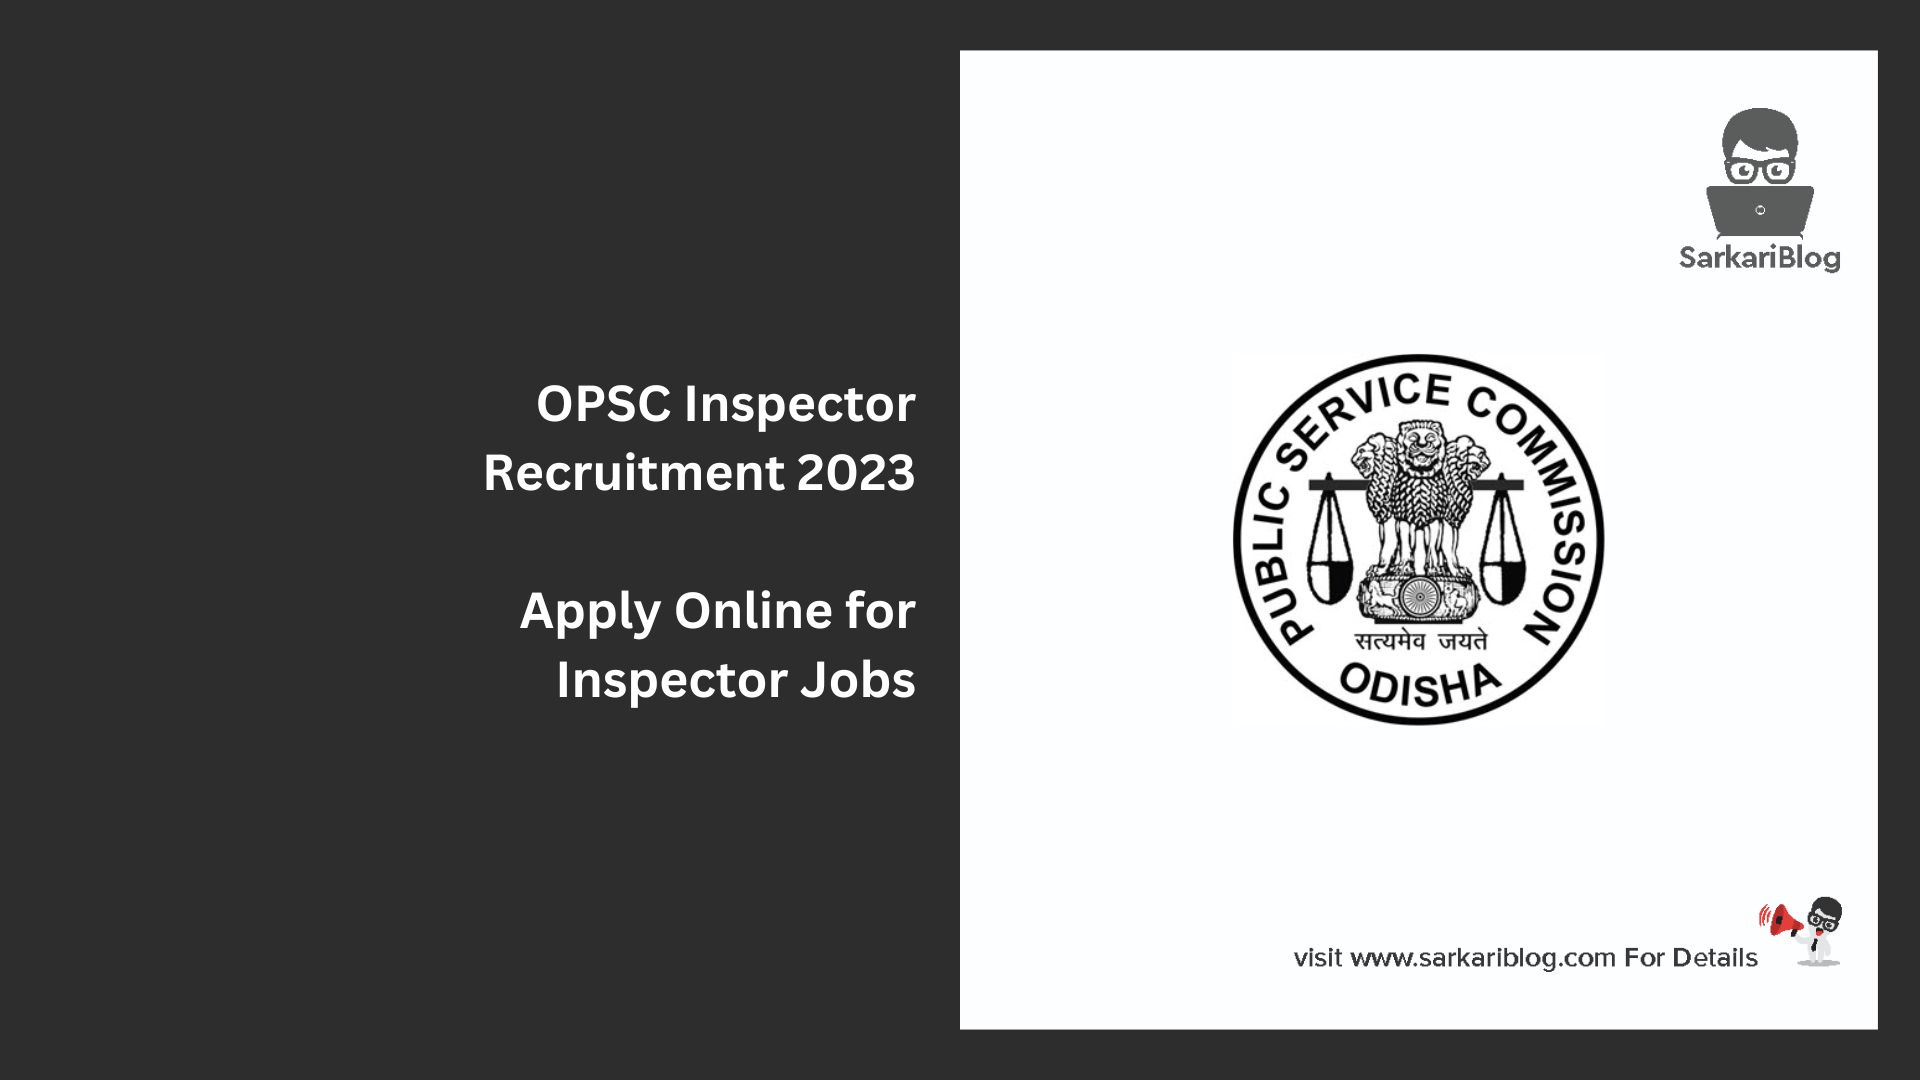 OPSC Inspector Recruitment 2023